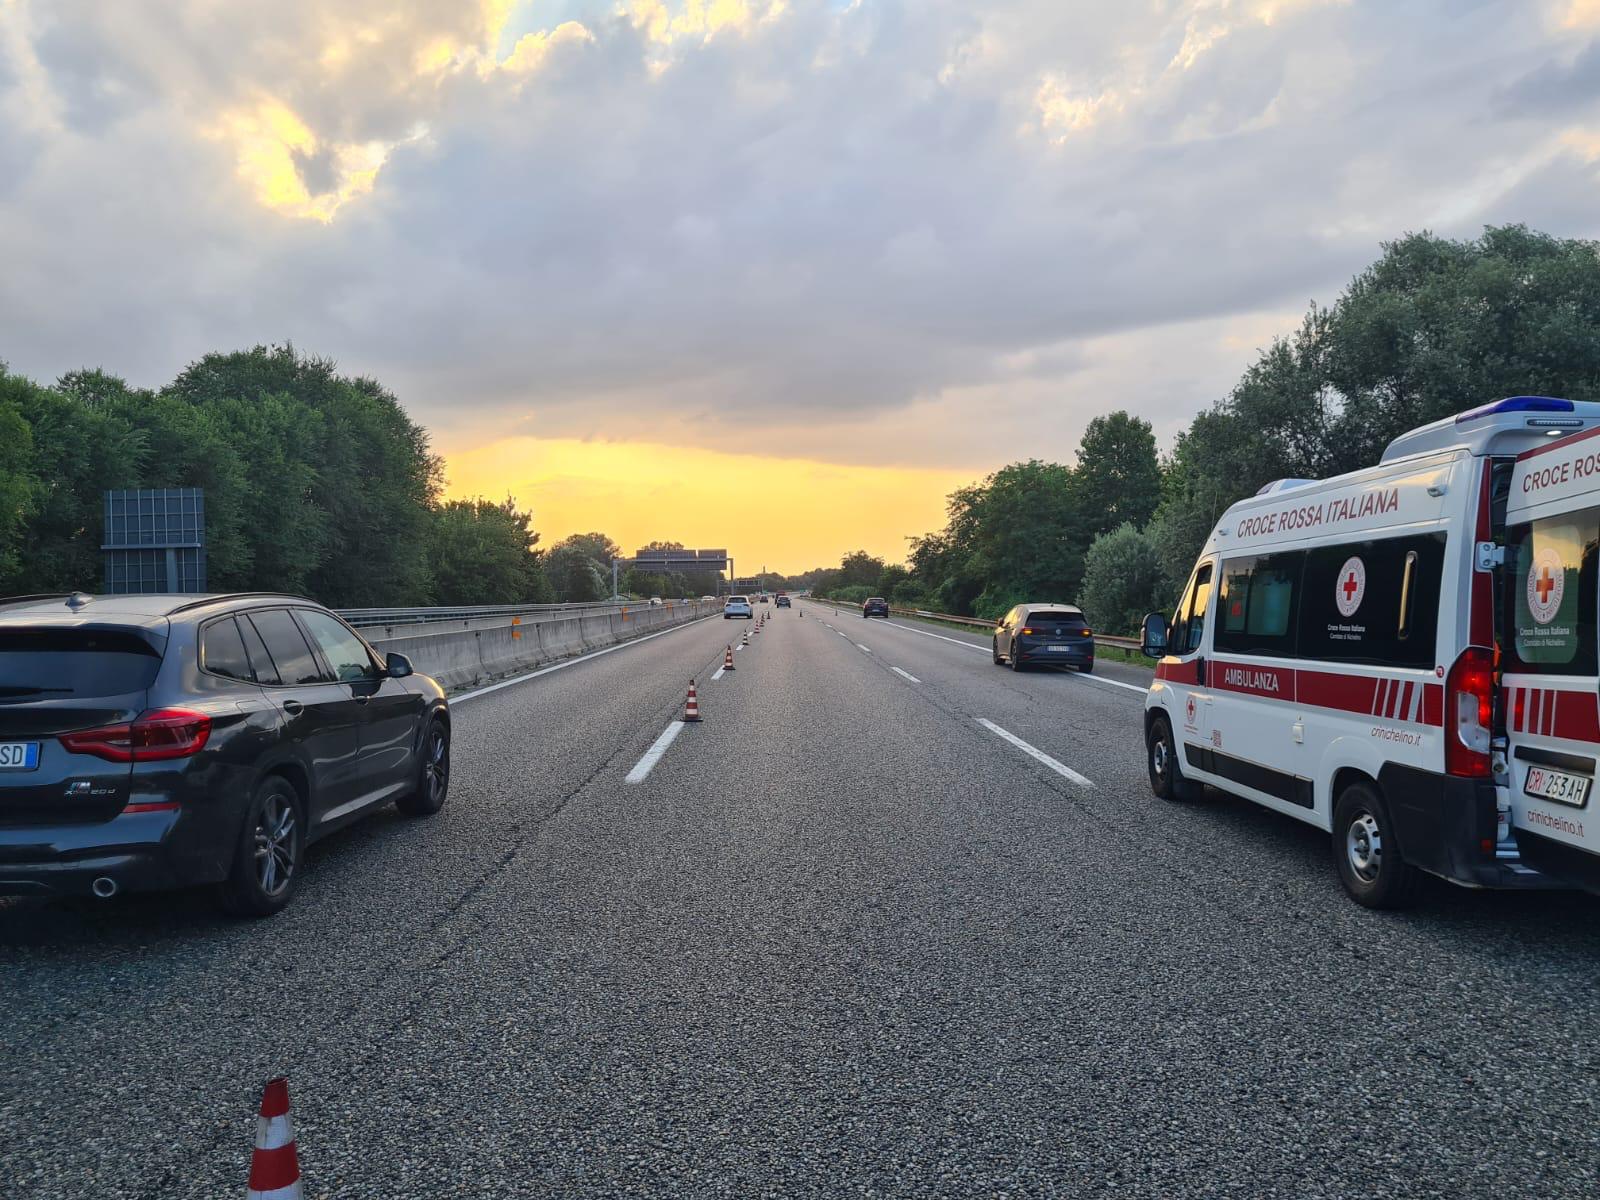 MONCALIERI – Tragedia in tangenziale: muore autista di carroattrezzi di appena 21 anni mentre caricava una moto